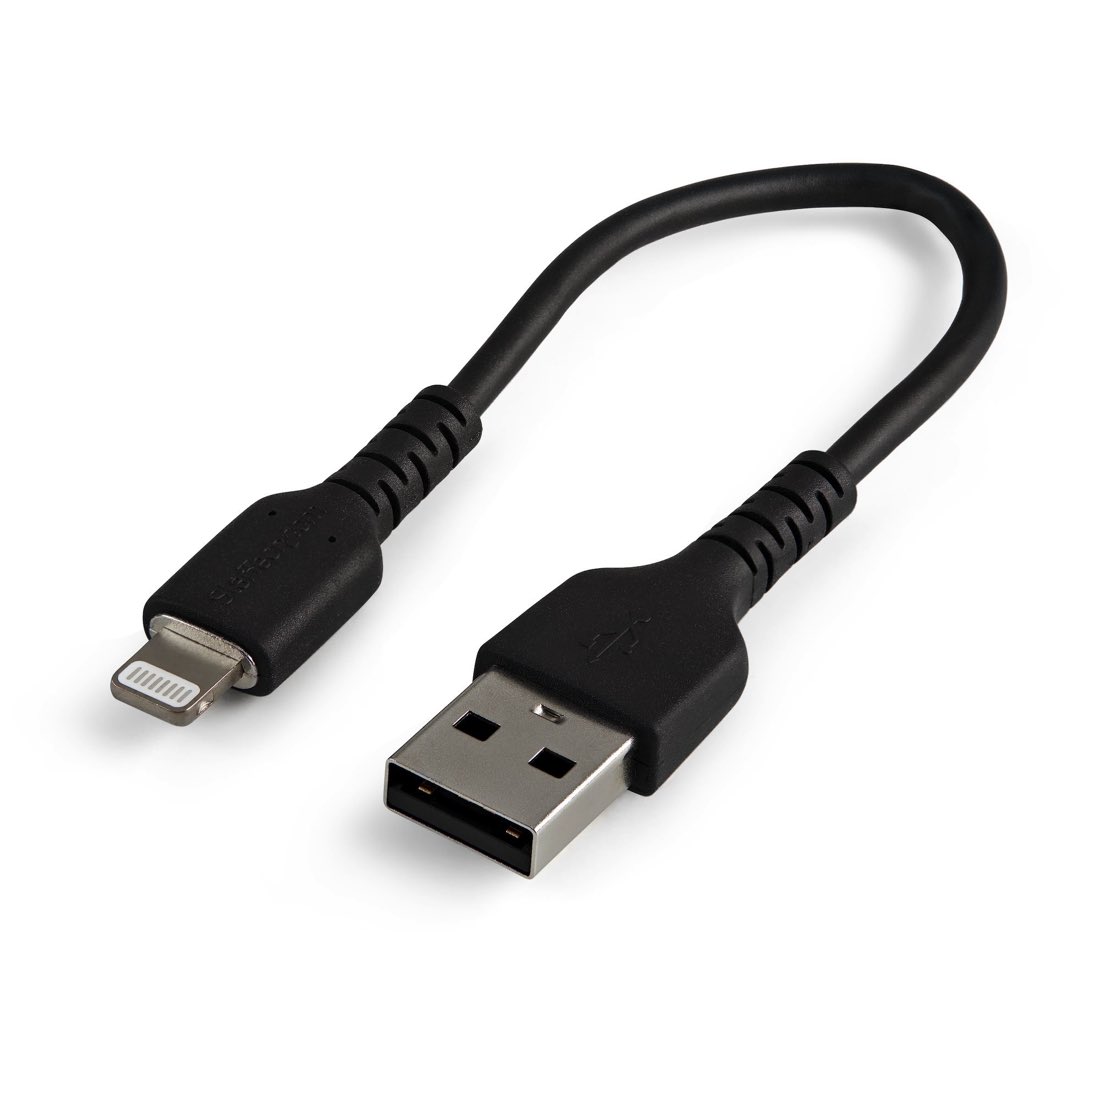 StarTech.com Cable Resistente USB-A a Lightning de 15 cm Negro - Cable de Sincronización y Carga USB Tipo A a Lightning con Fibra de Aramida